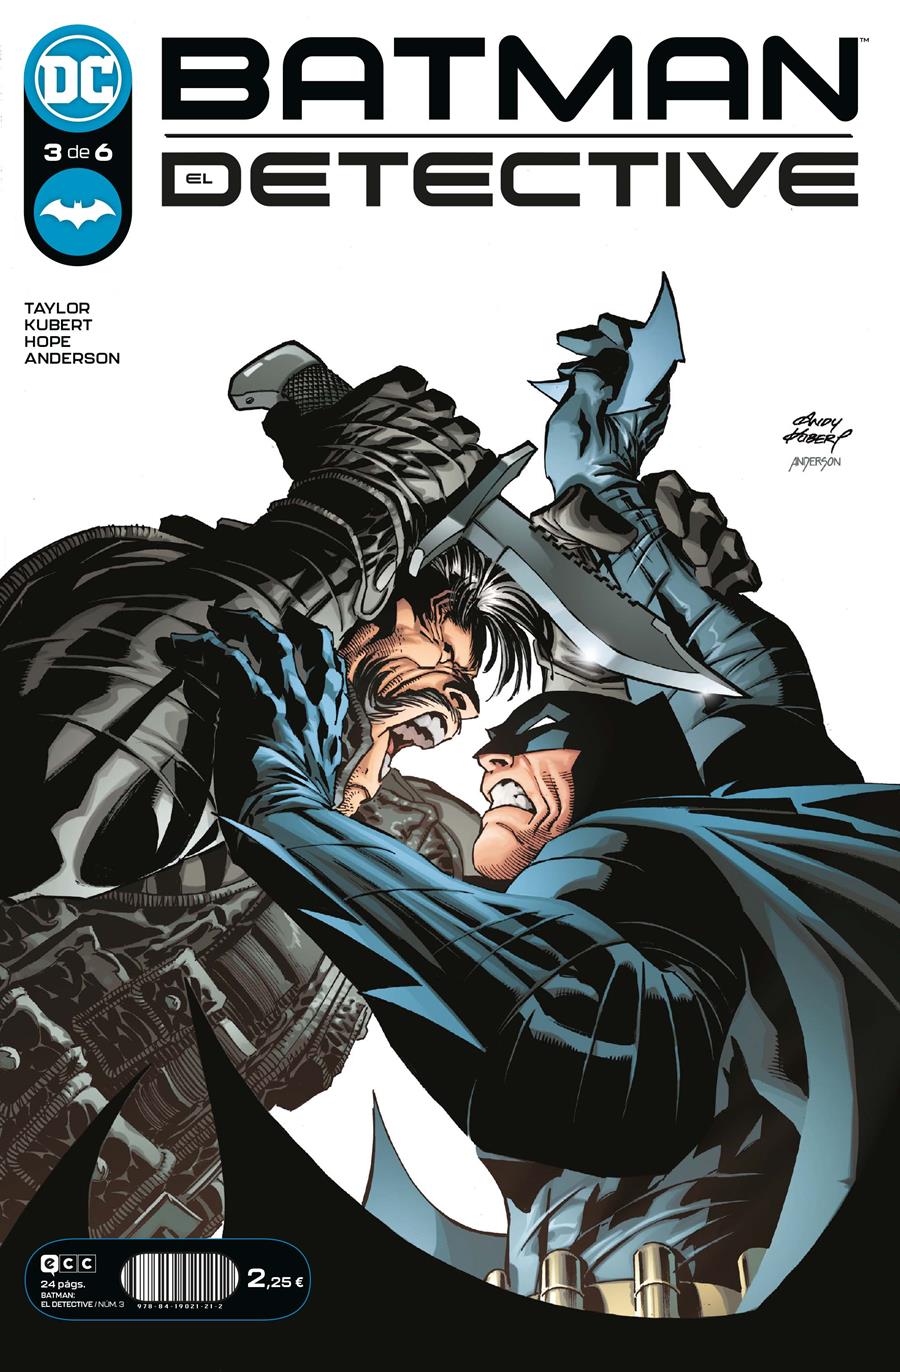 Batman: El Detective núm. 3 de 6 | N0122-ECC06 | Andy Kubert / Tom Taylor | Terra de Còmic - Tu tienda de cómics online especializada en cómics, manga y merchandising